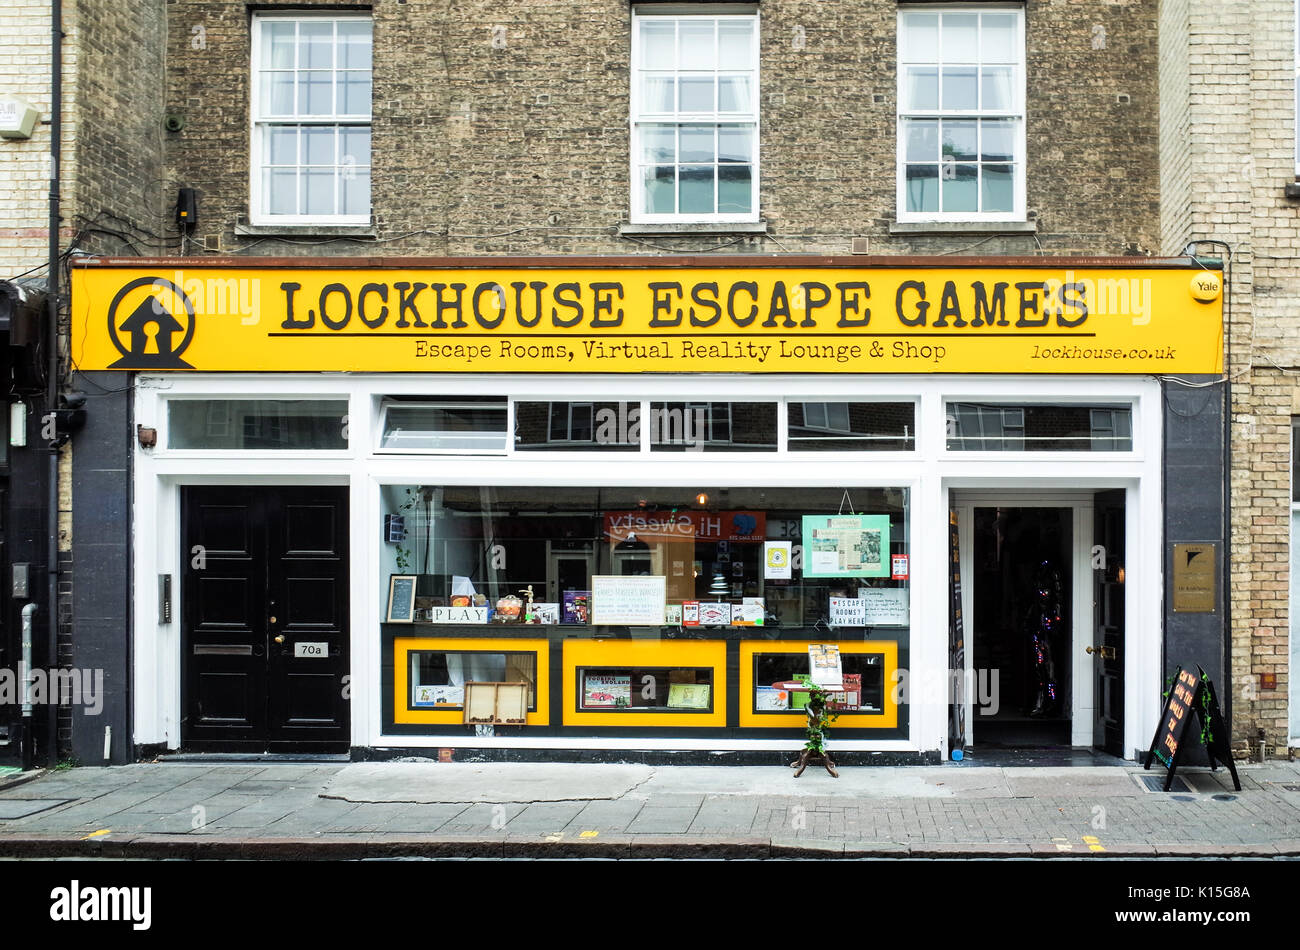 Lockhouse giochi Escape in Cambridge, è specializzato in giochi escape, realtà virtuale esperienze, giochi da tavolo e puzzle. Foto Stock